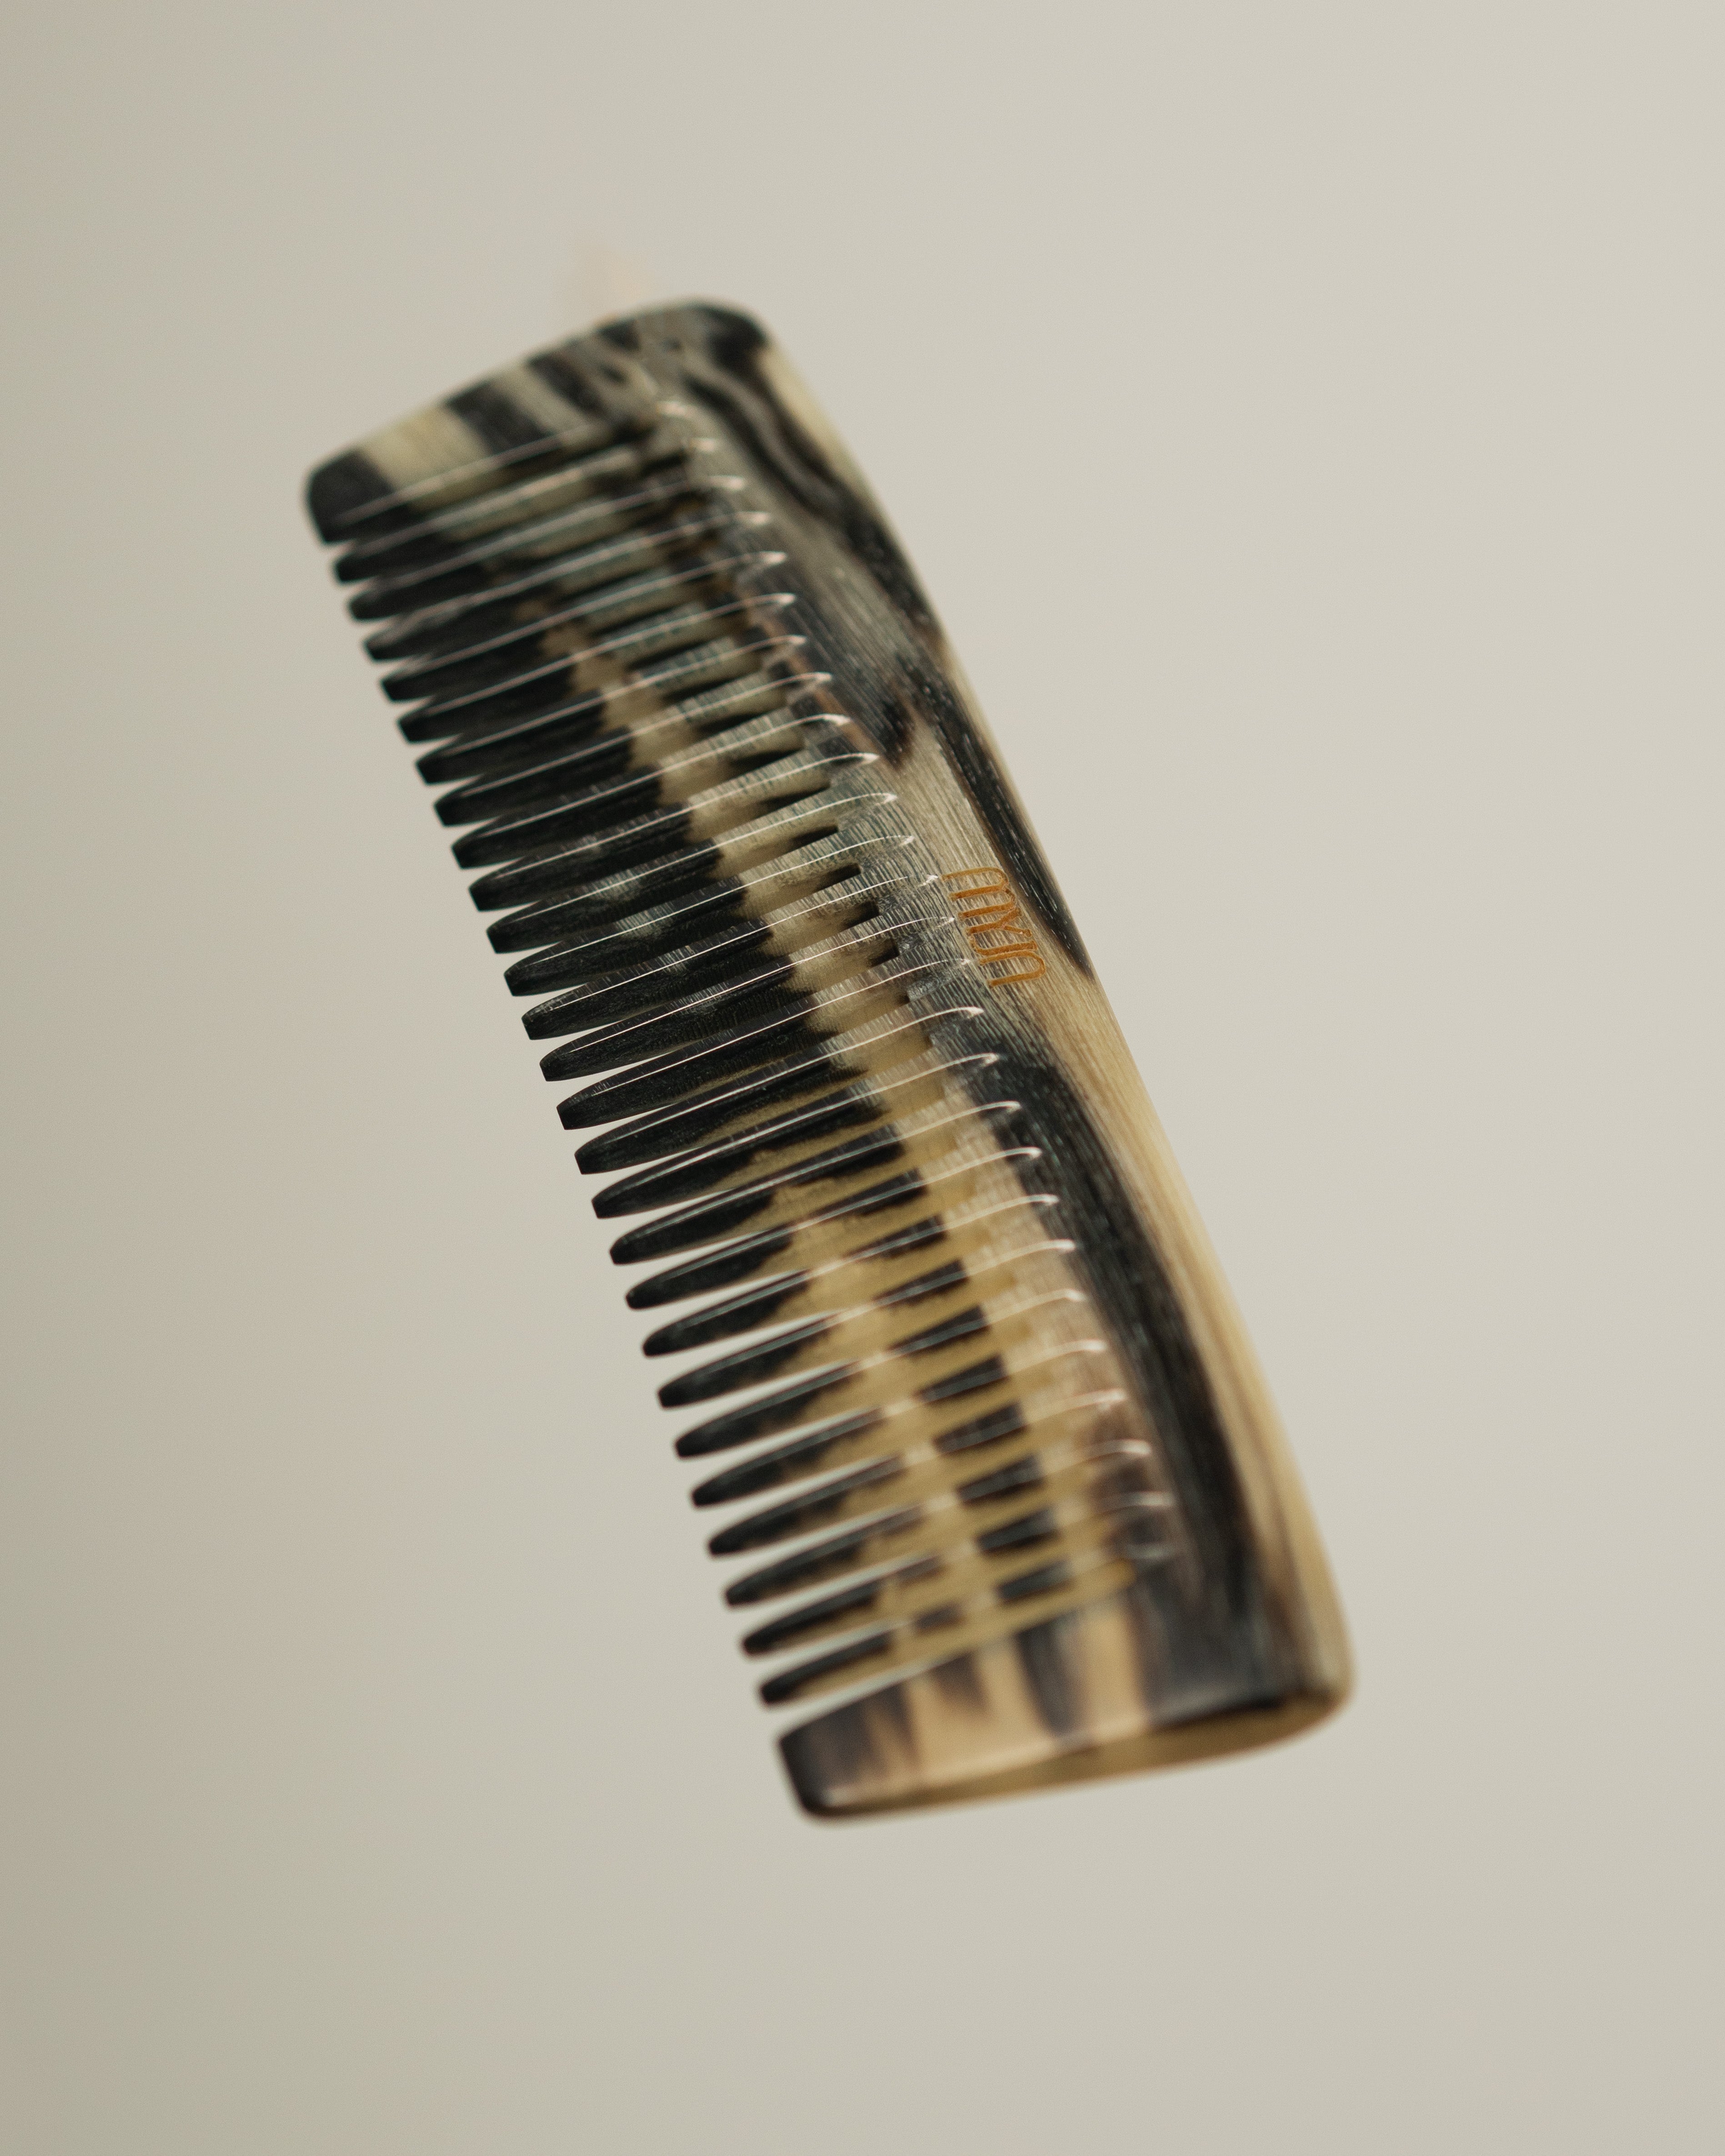 The Curved Gua Sha Comb